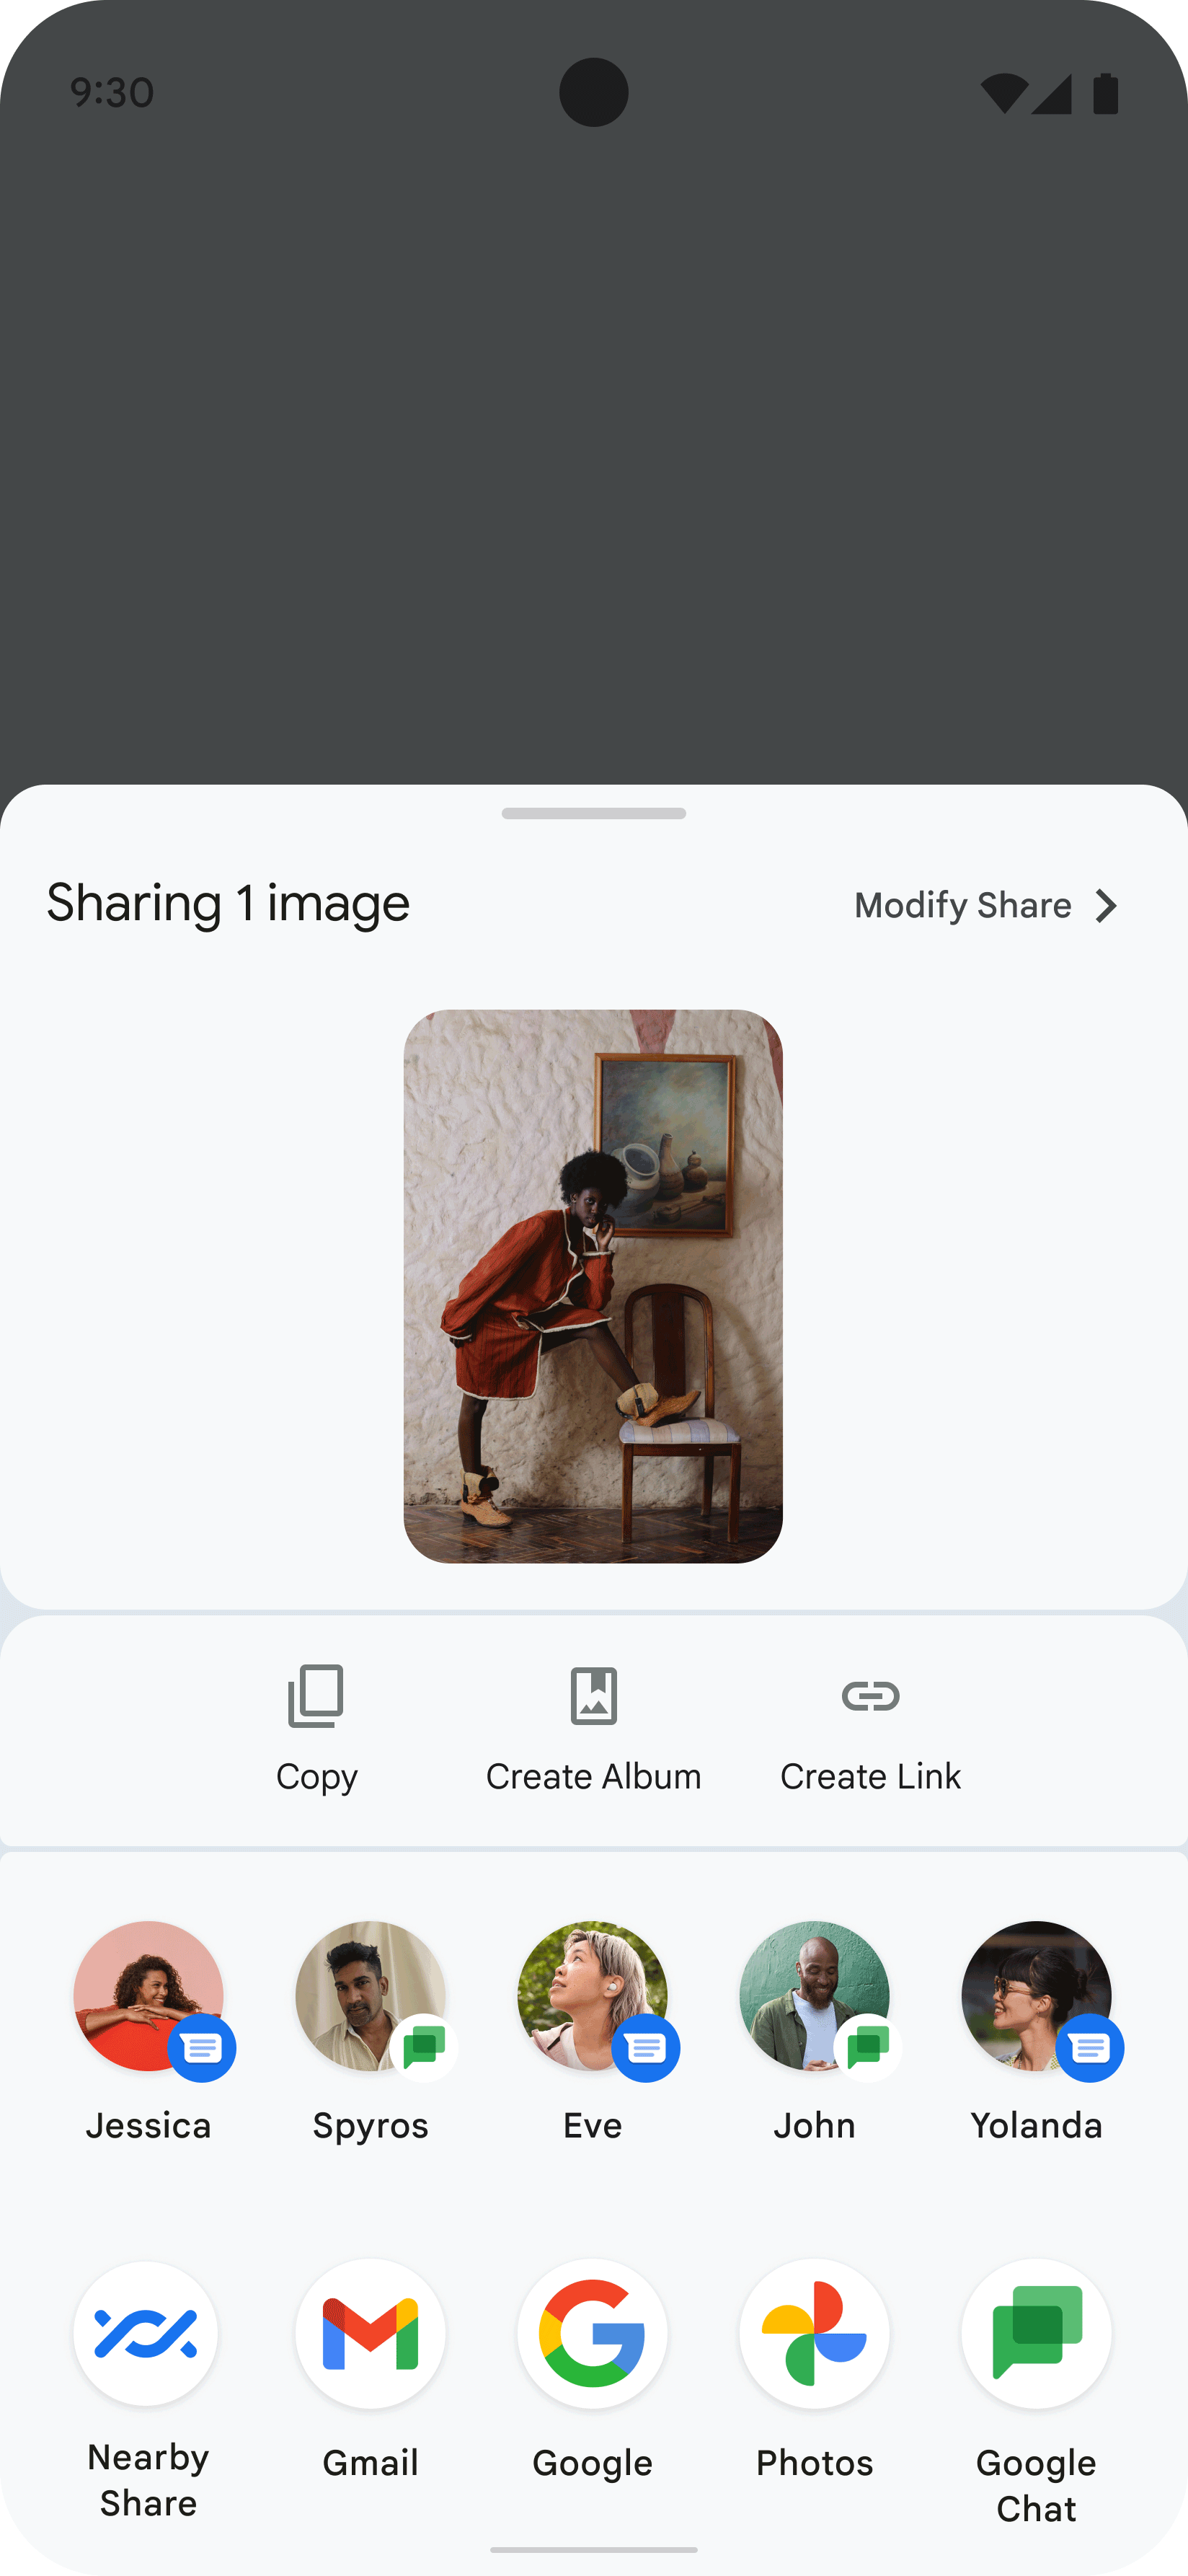 이 이미지는 앱에 표시된 Sharesheet를 보여주며 이는 사용자가 사람의 이미지를 공유한 결과입니다. Sharesheet에는 이미지를 공유할 수 있는 연락처 및 앱을 나타내는 여러 아이콘이 표시됩니다.